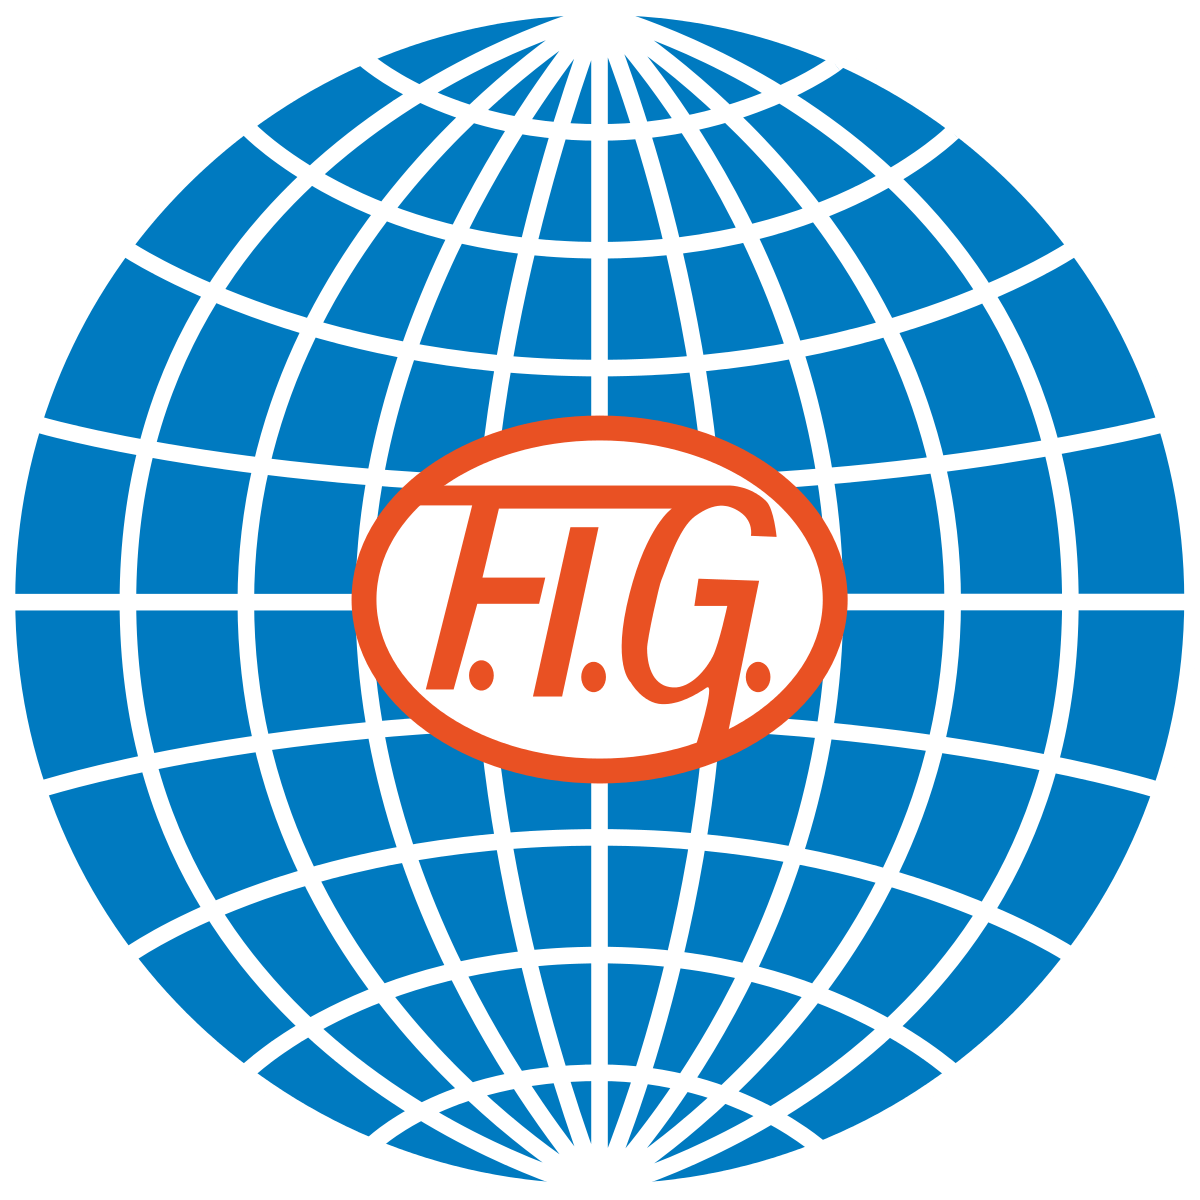 The Federation Logo - International Gymnastics Federation